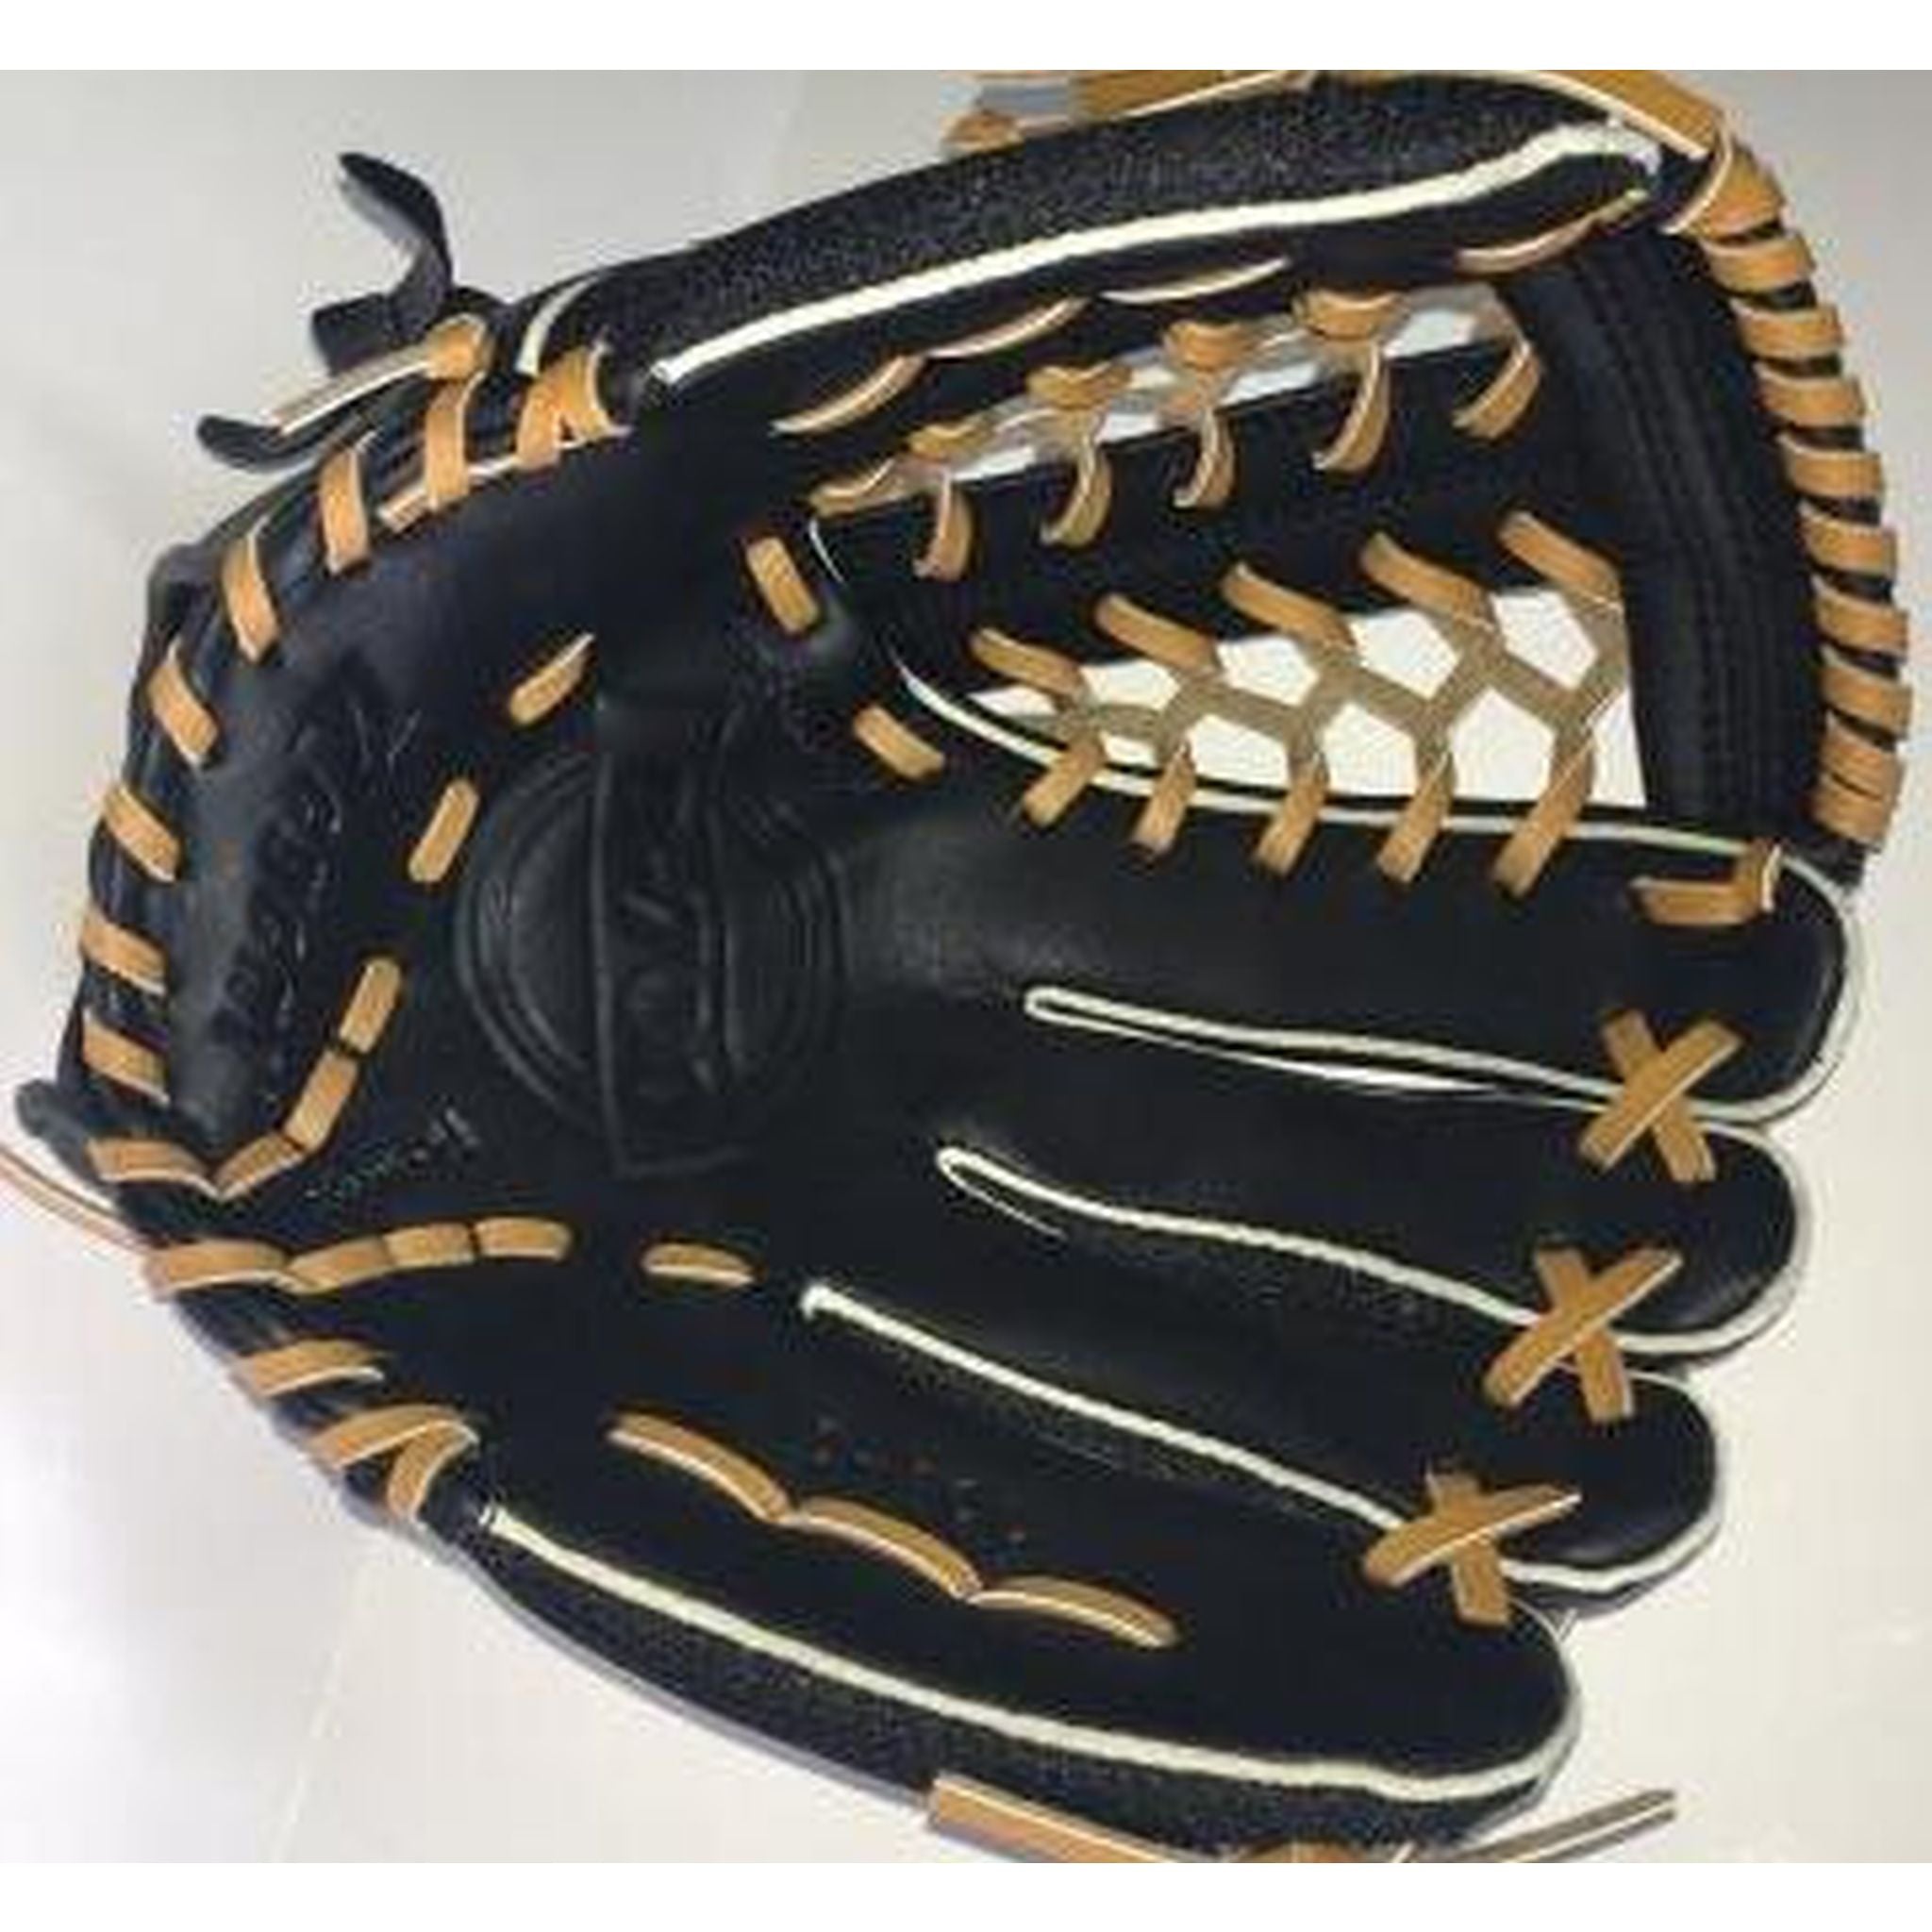 Regent D700 11-inch Baseball/Softball Glove